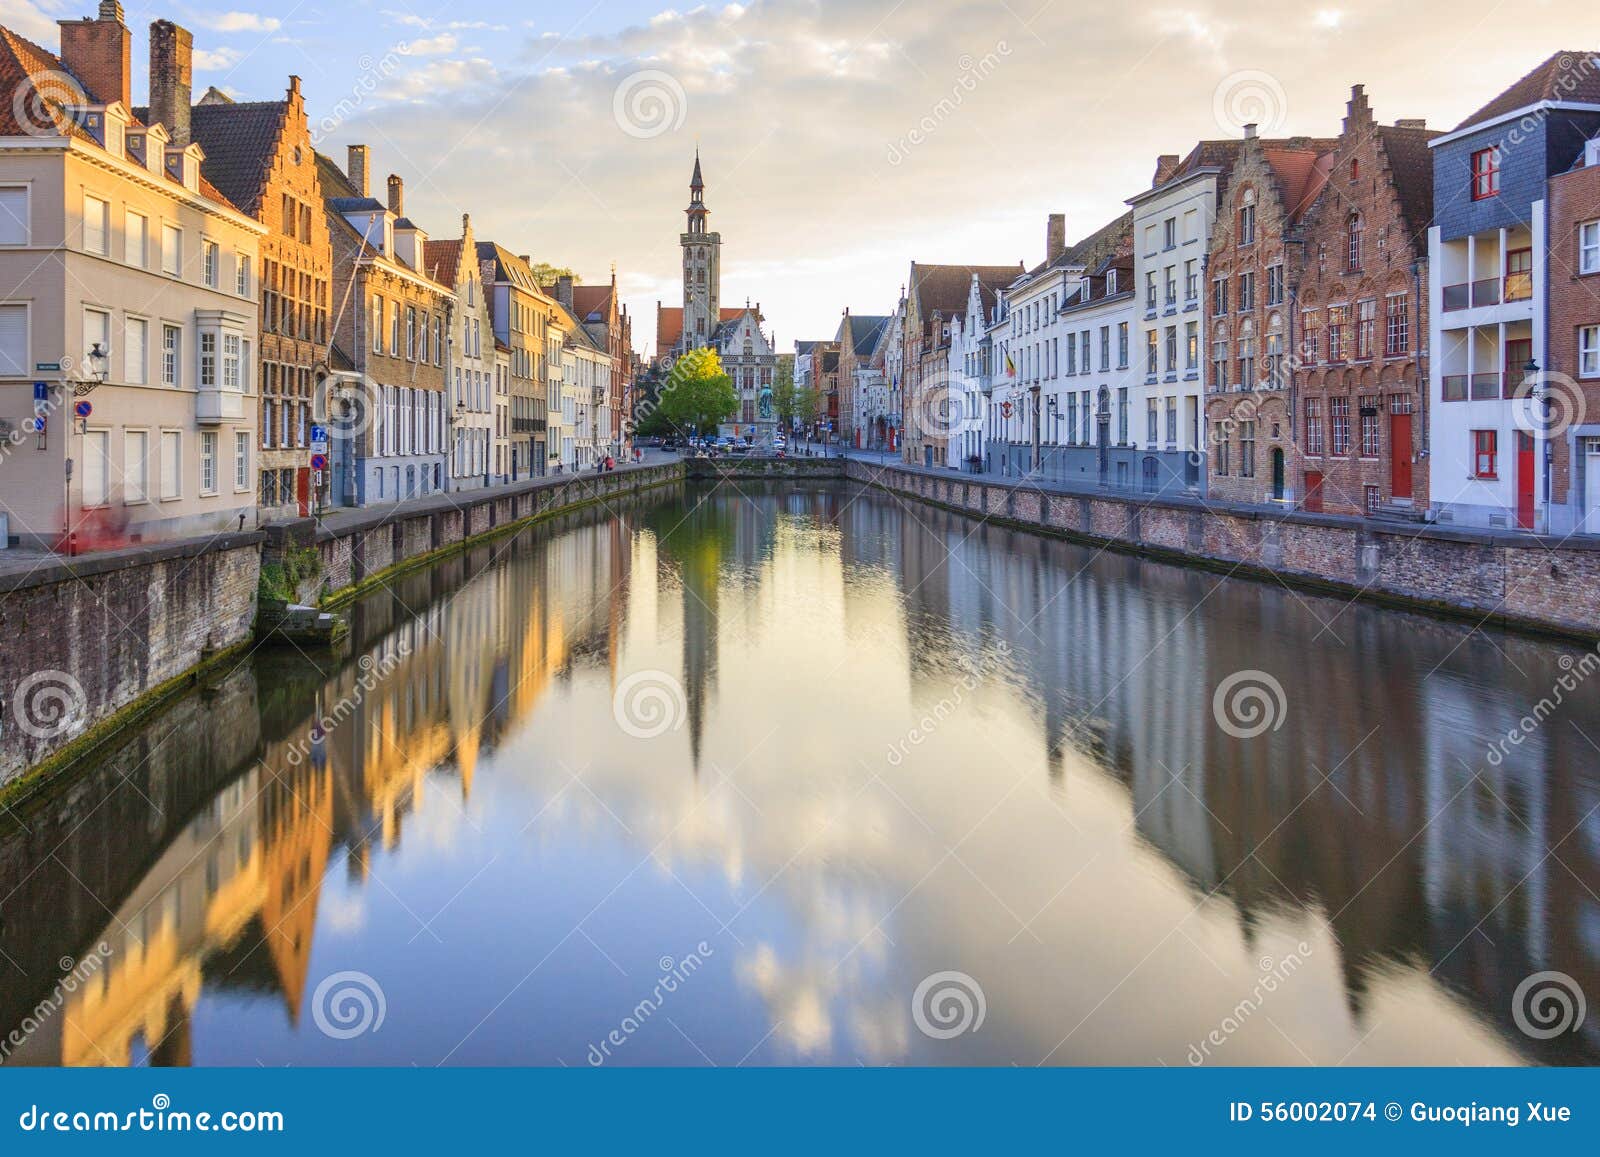 canals of bruges, belgium